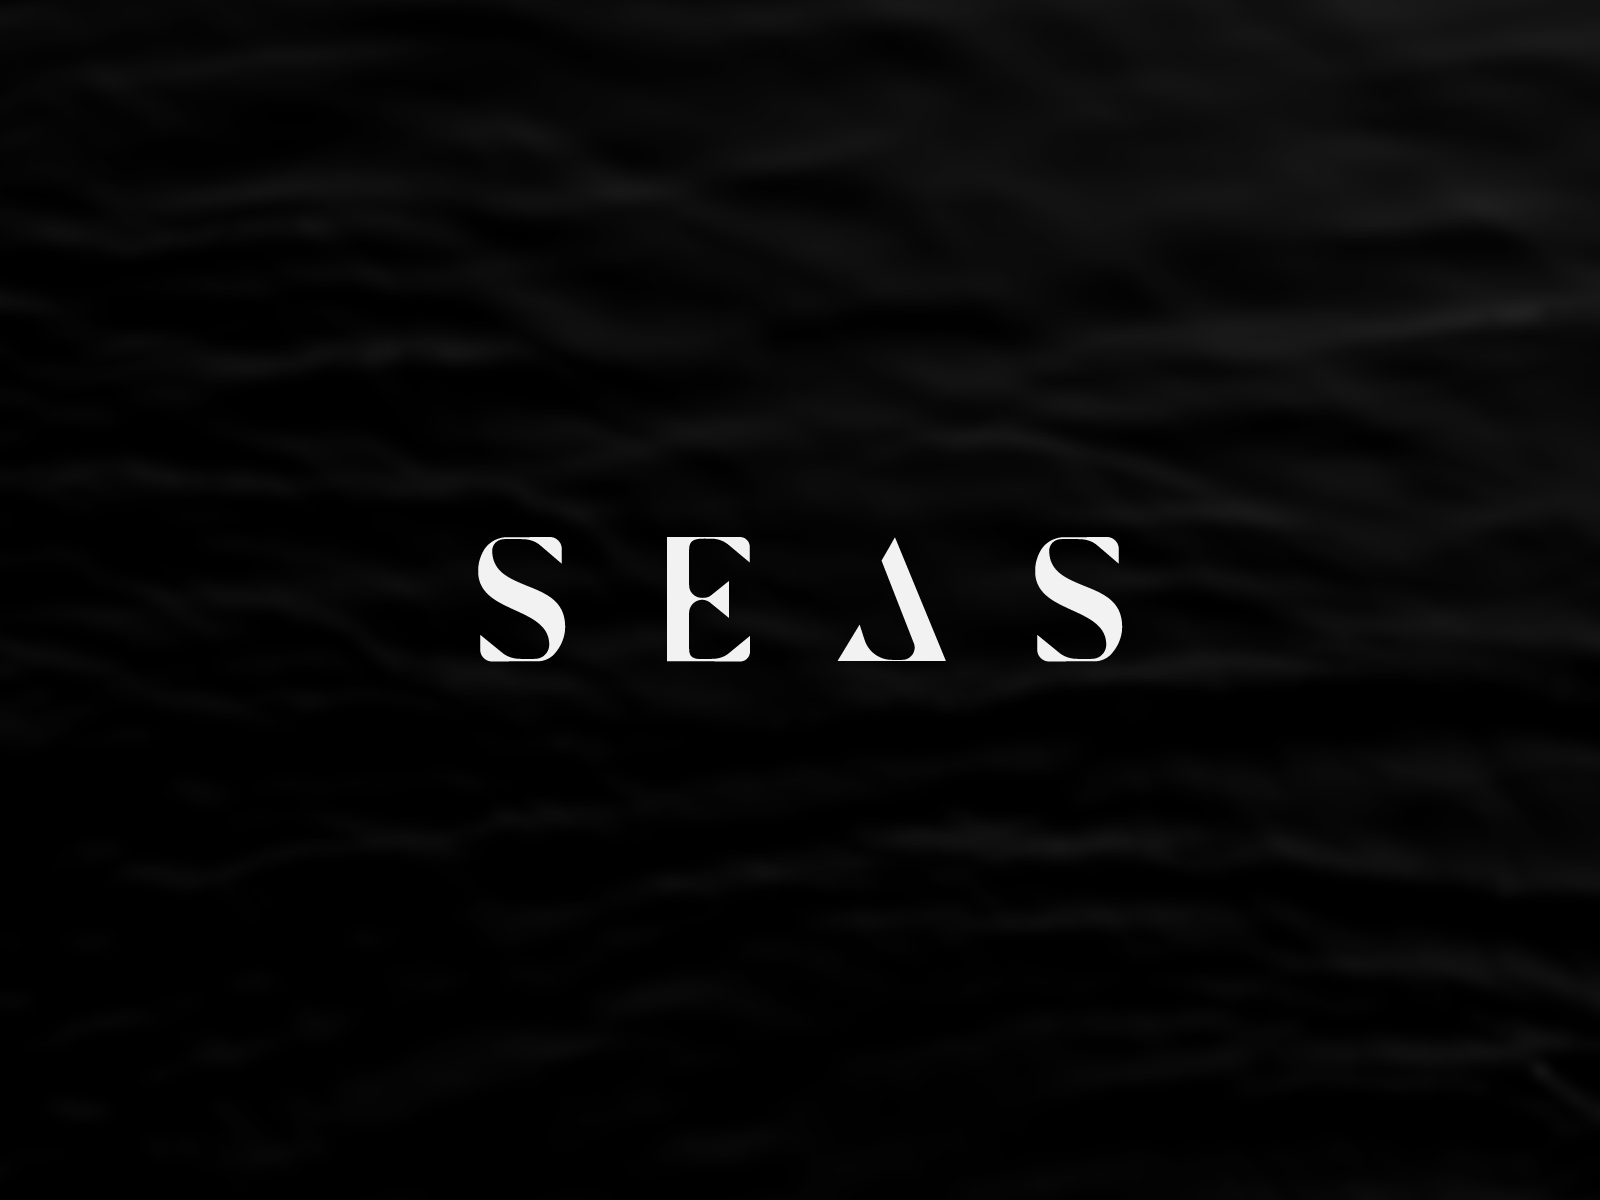 SEAS by Stevan Rodic on Dribbble